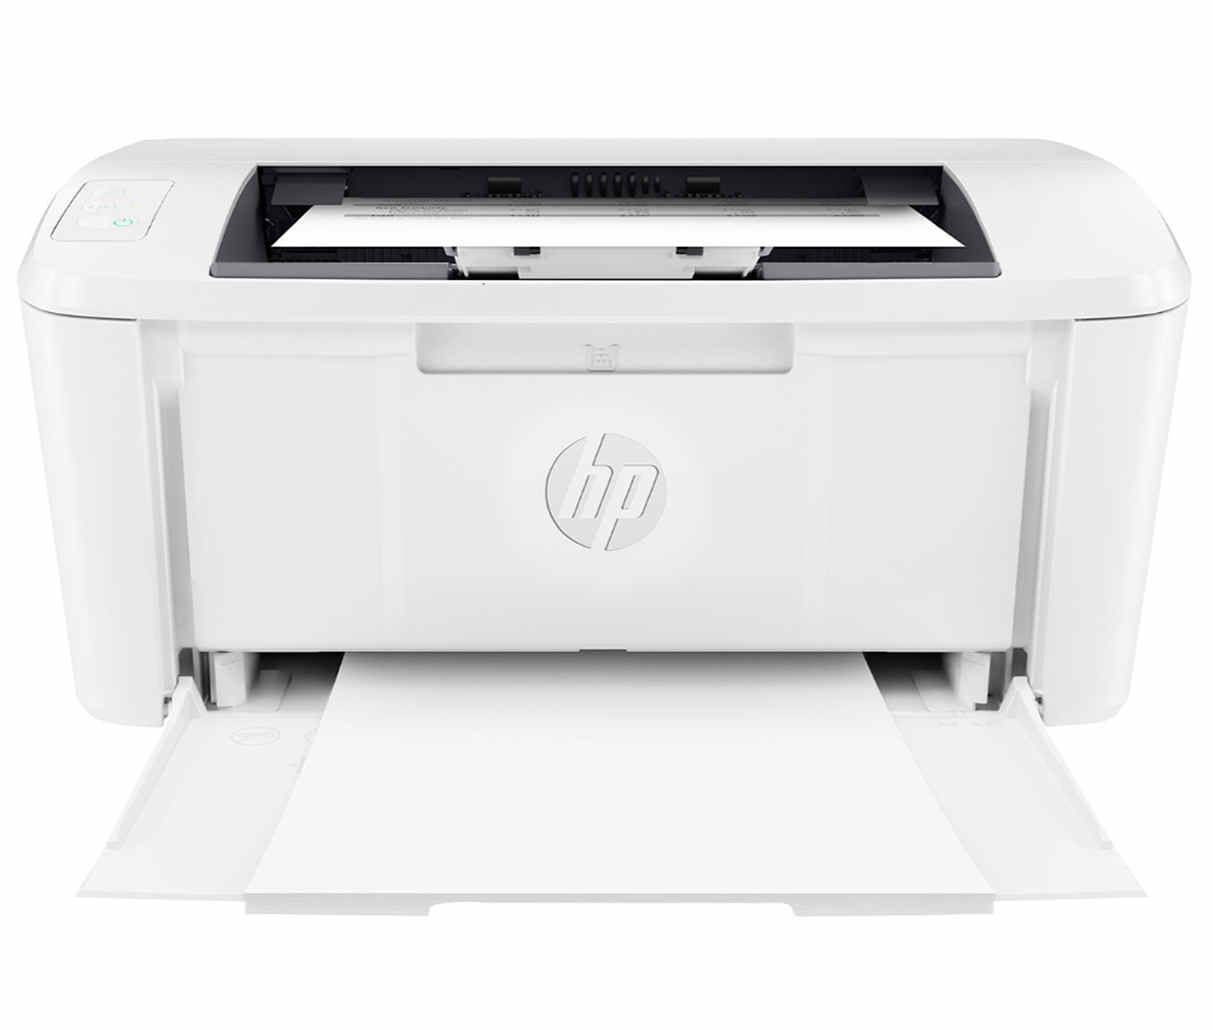 HP LaserJet M110we Laserdrucker